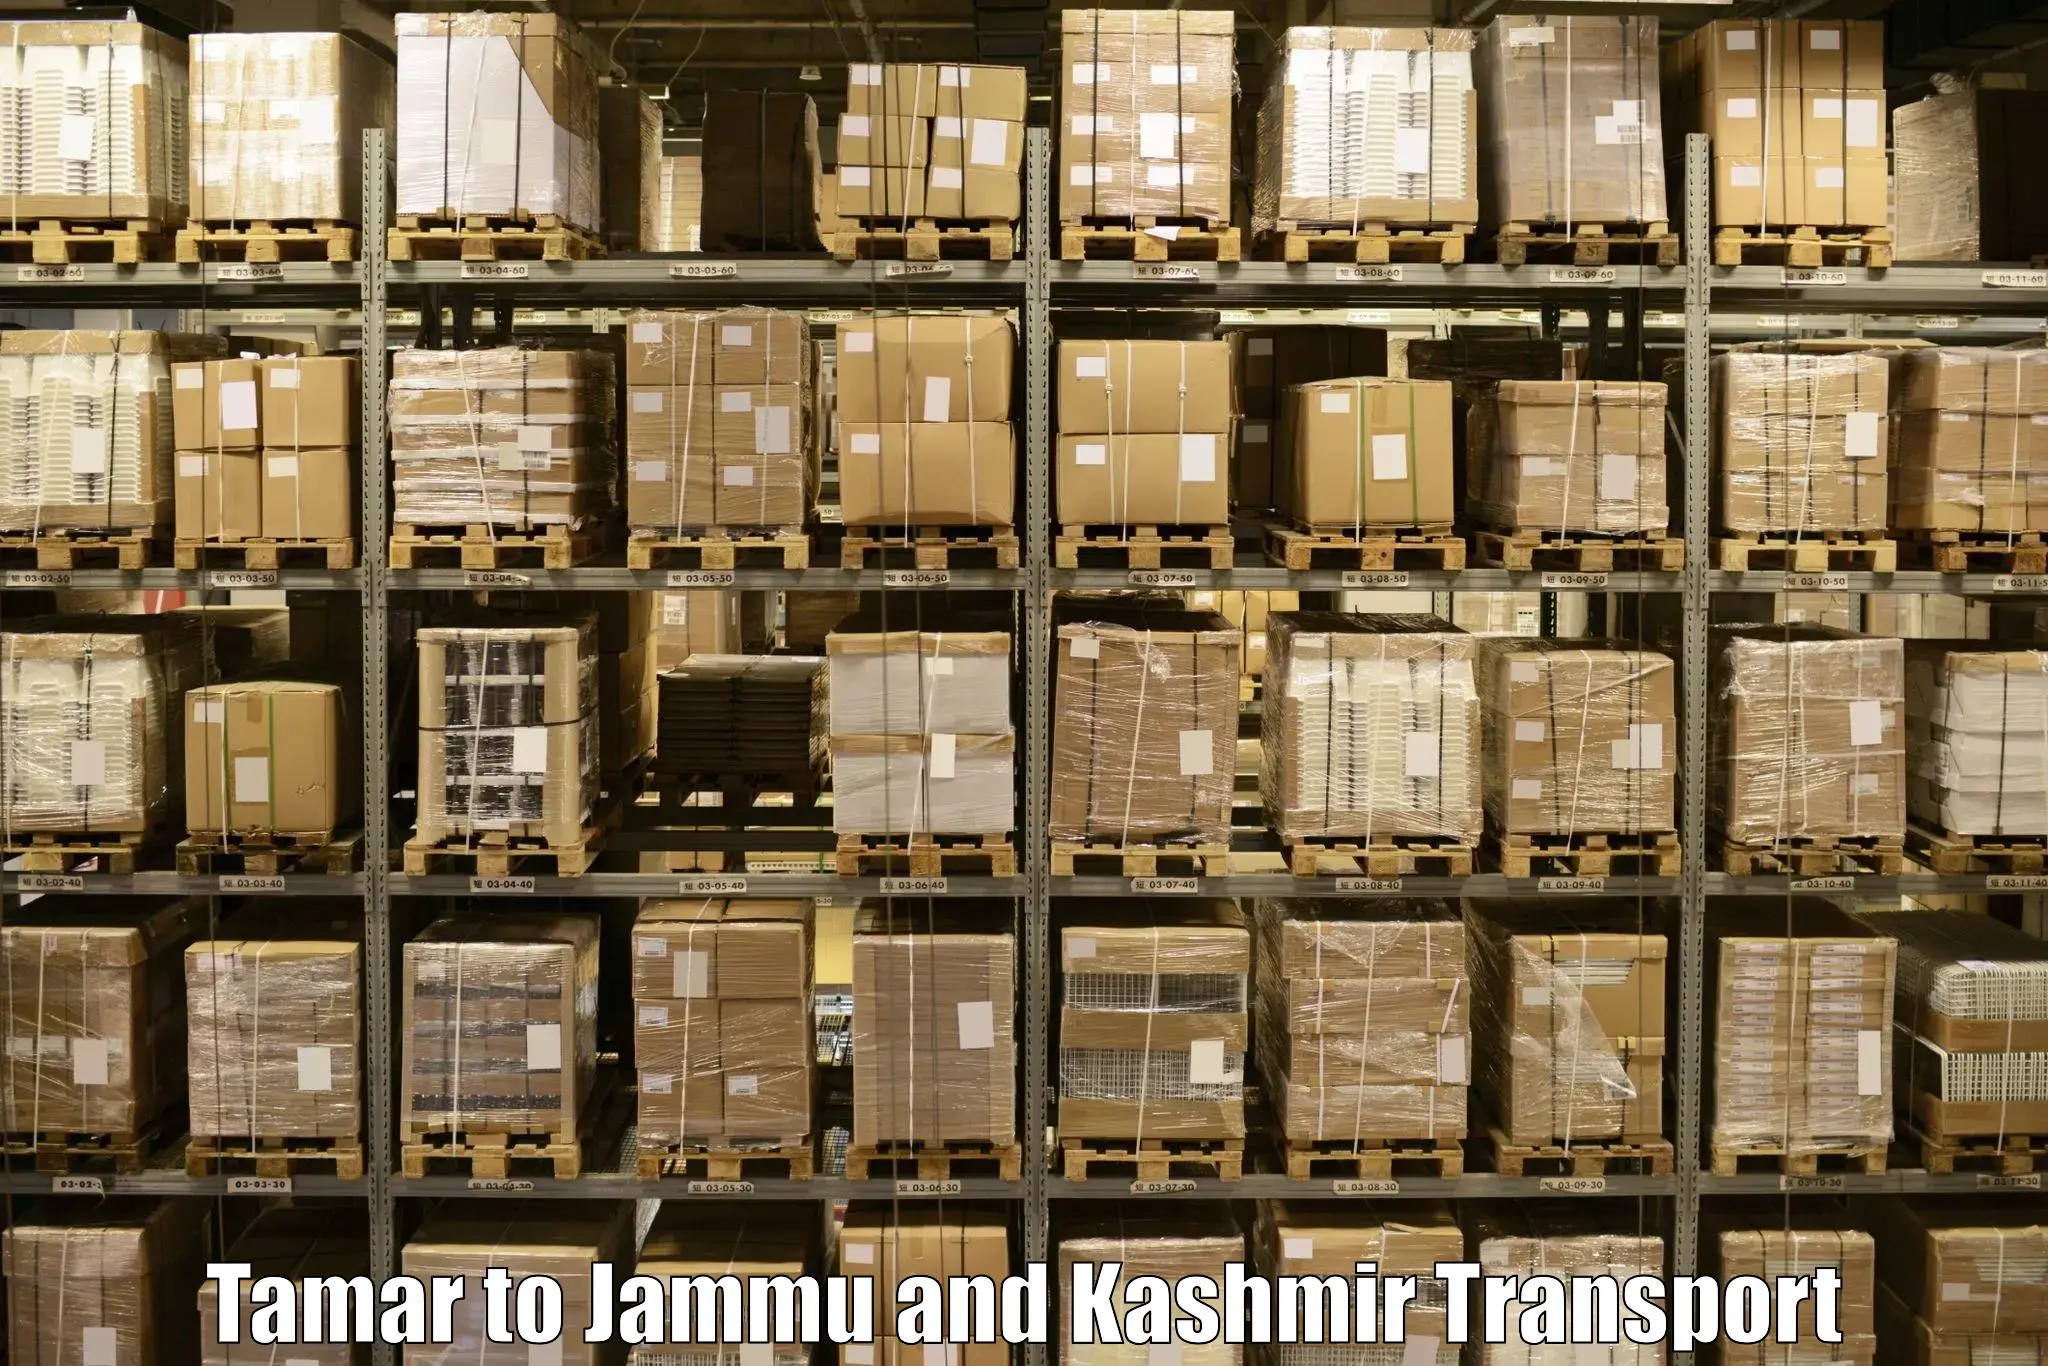 Daily transport service Tamar to Jammu and Kashmir